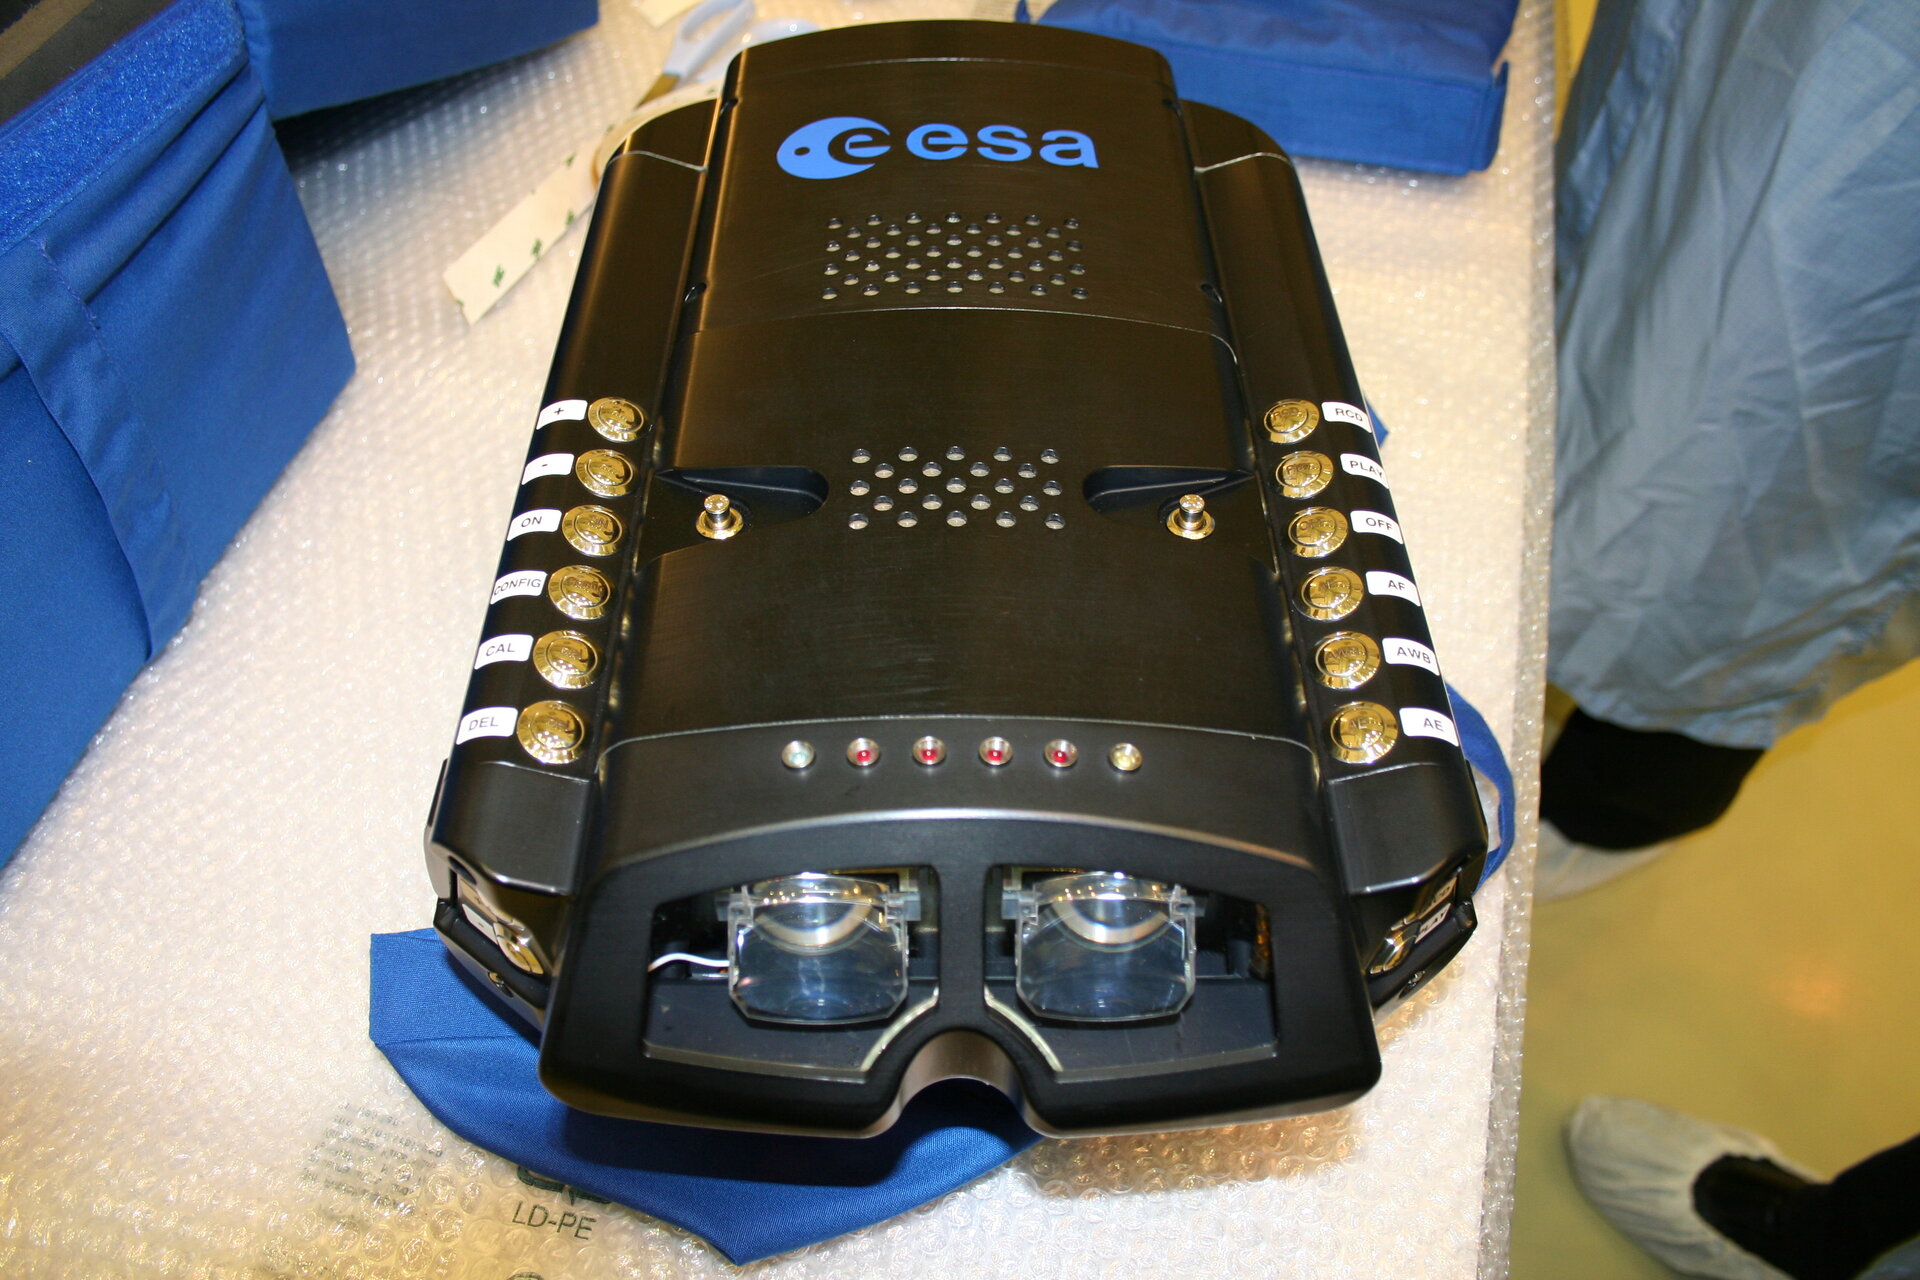 ERB-2 camera